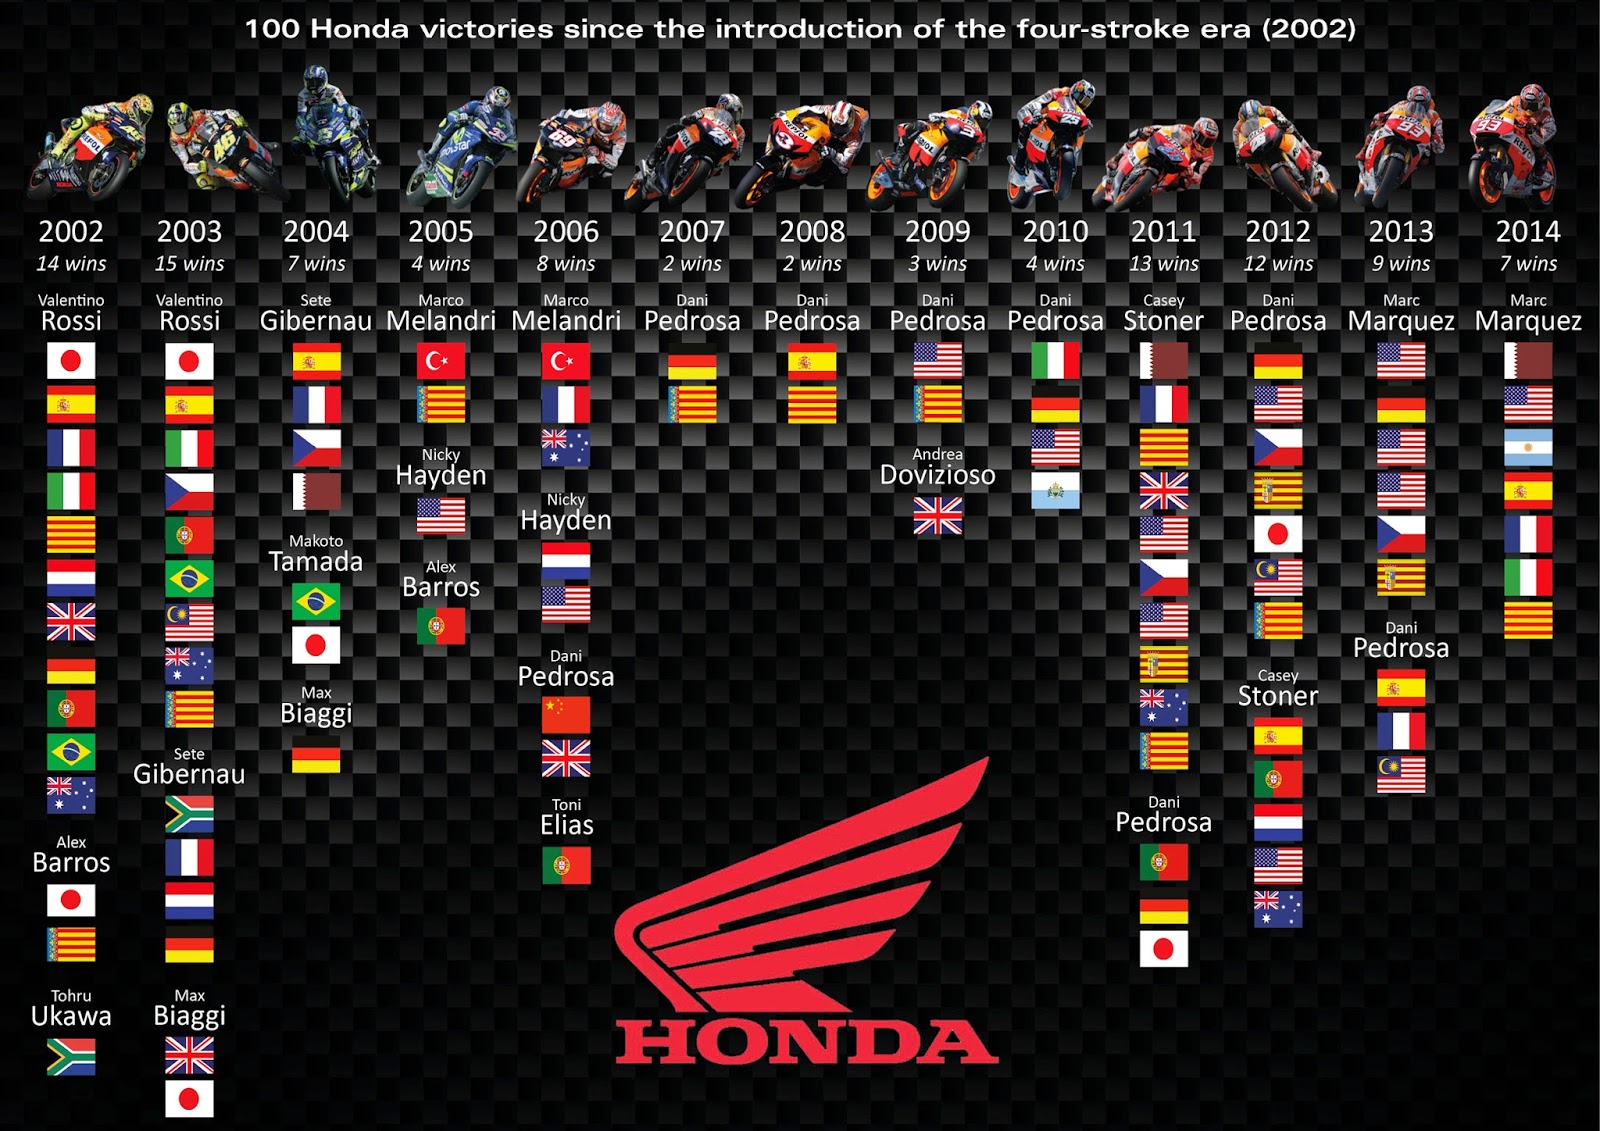 7η συνεχόμενη νίκη για το Marquez στην Καταλονία και 100η νίκη για τη Honda  στο Παγκόσμιο Πρωτάθλημα MotoGP - Φωτογραφία 3